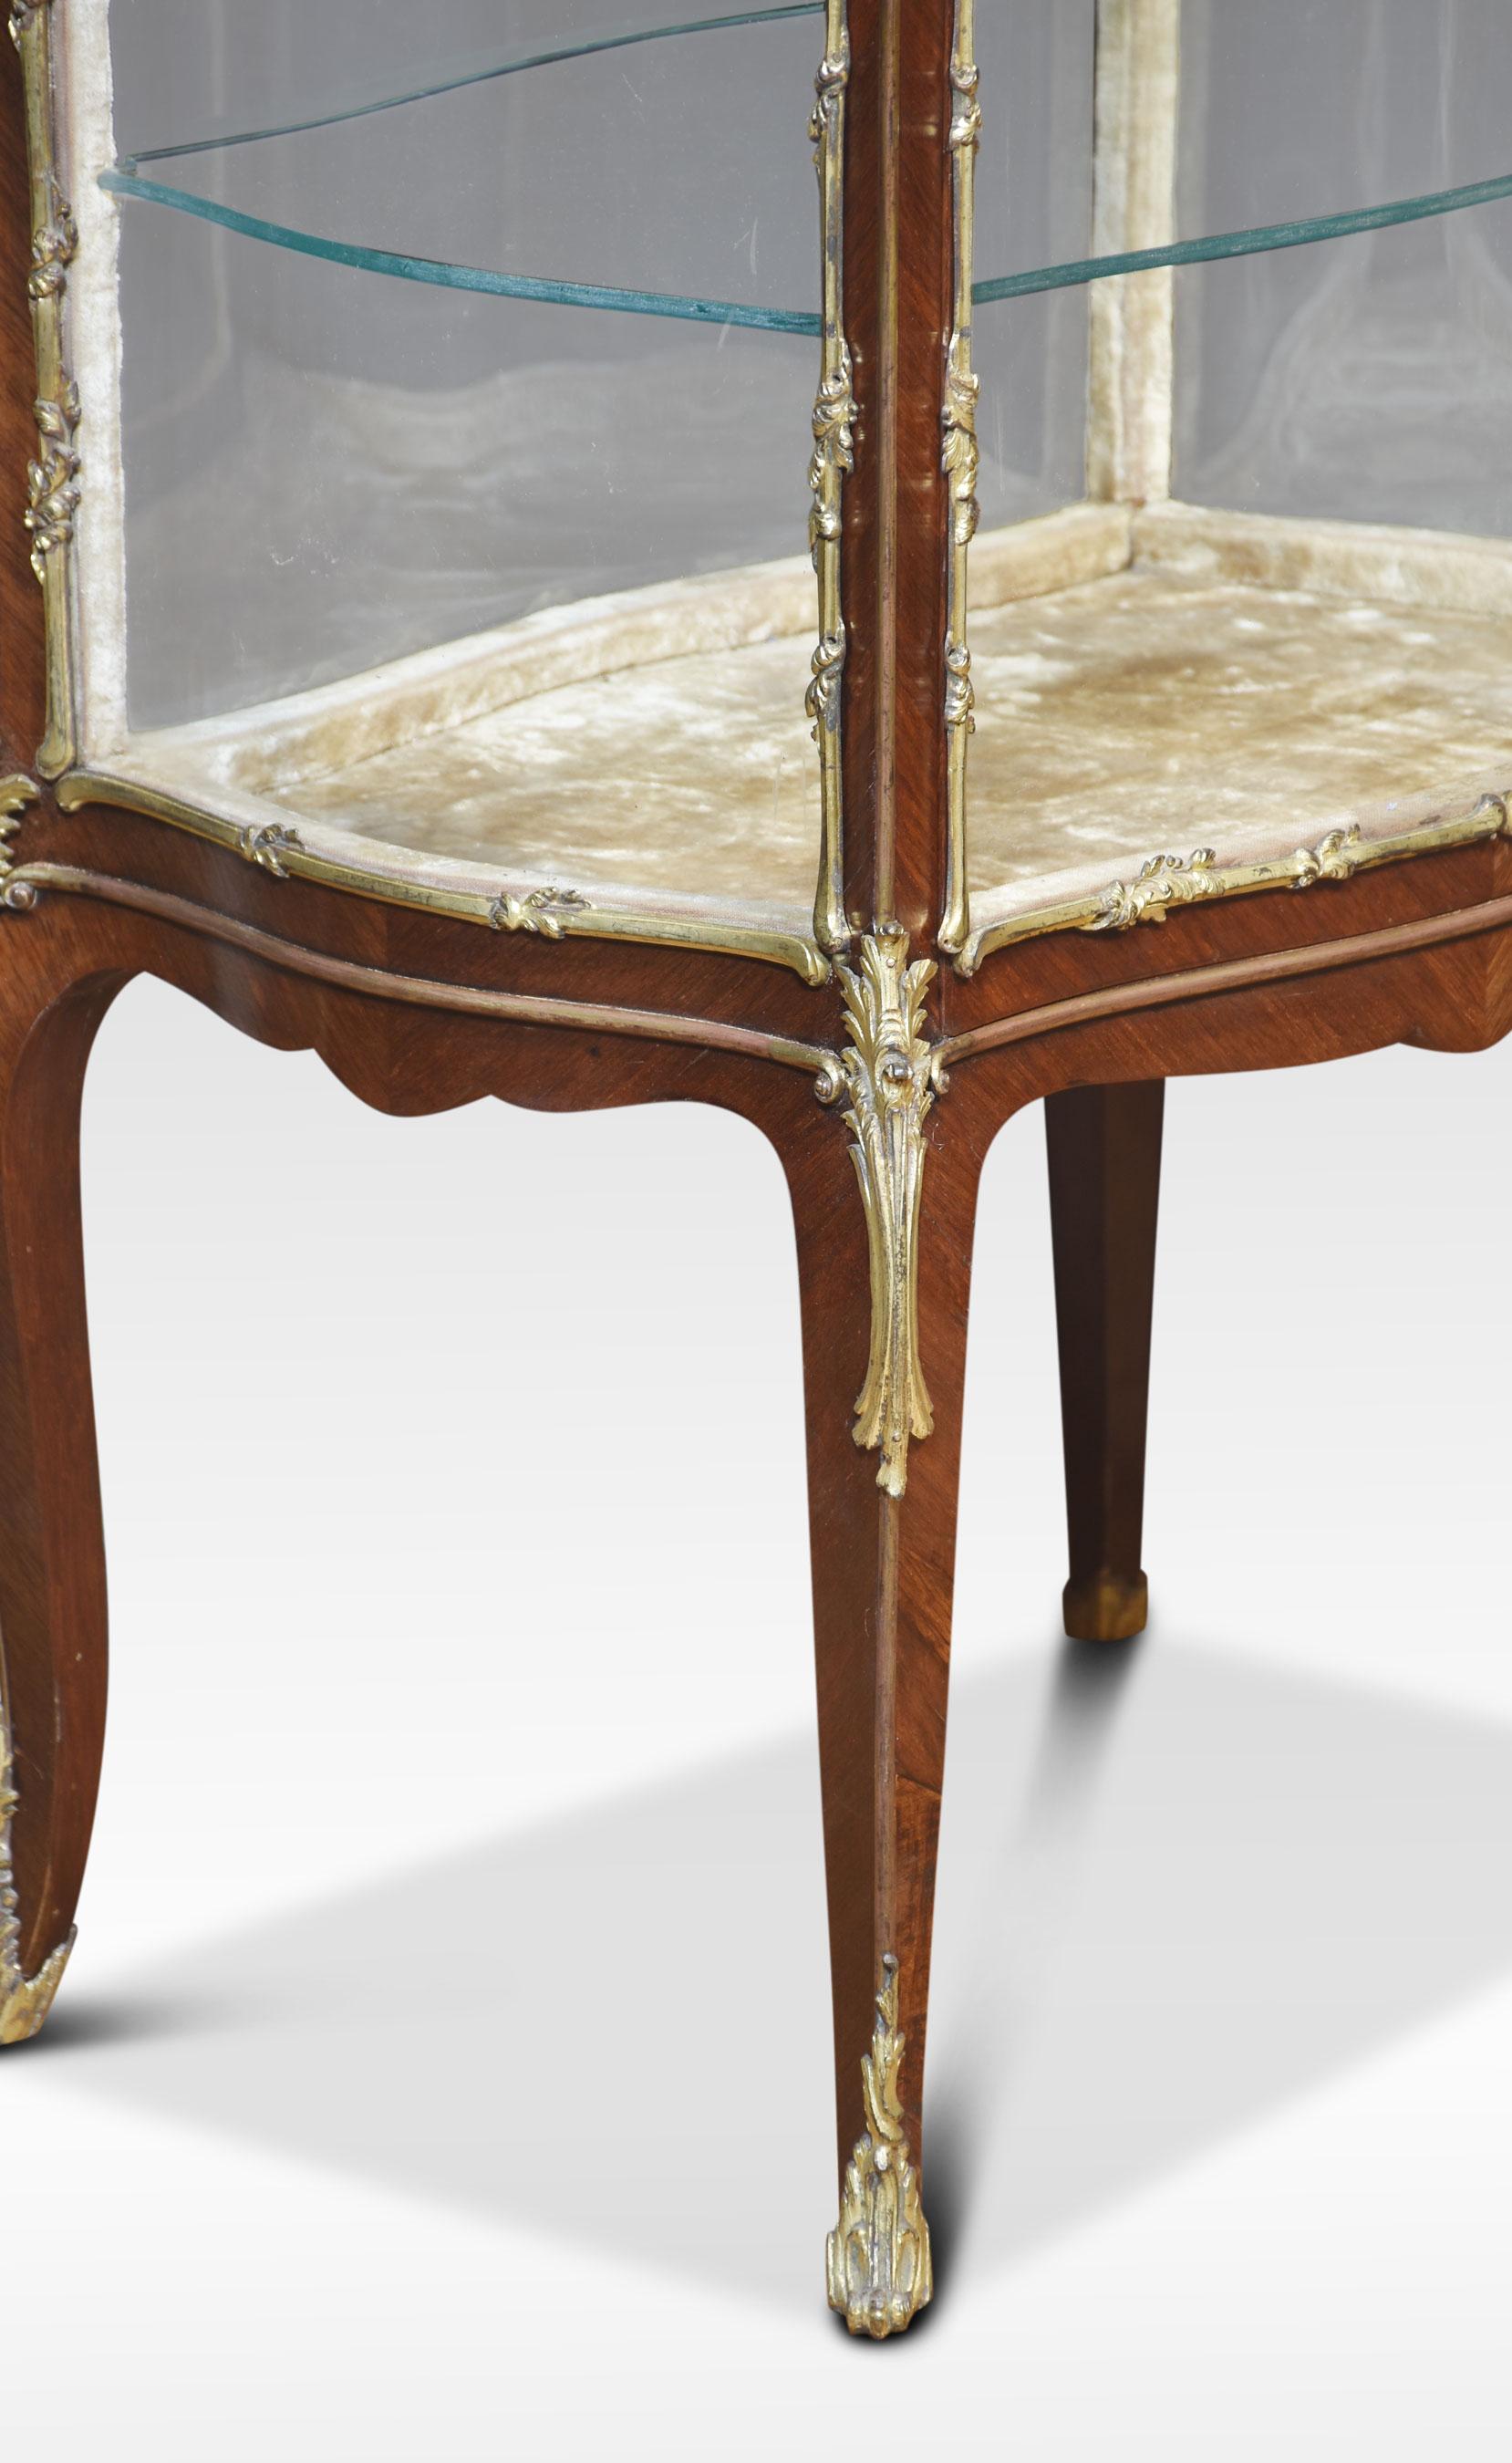 Meuble de bijouterie en noyer de style Louis XVI, de forme serpentine ornée de montures en métal doré. Le plateau en verre biseauté et les côtés vitrés façonnés mènent à la grande ouverture à une porte qui révèle deux étagères en verre. Le tout